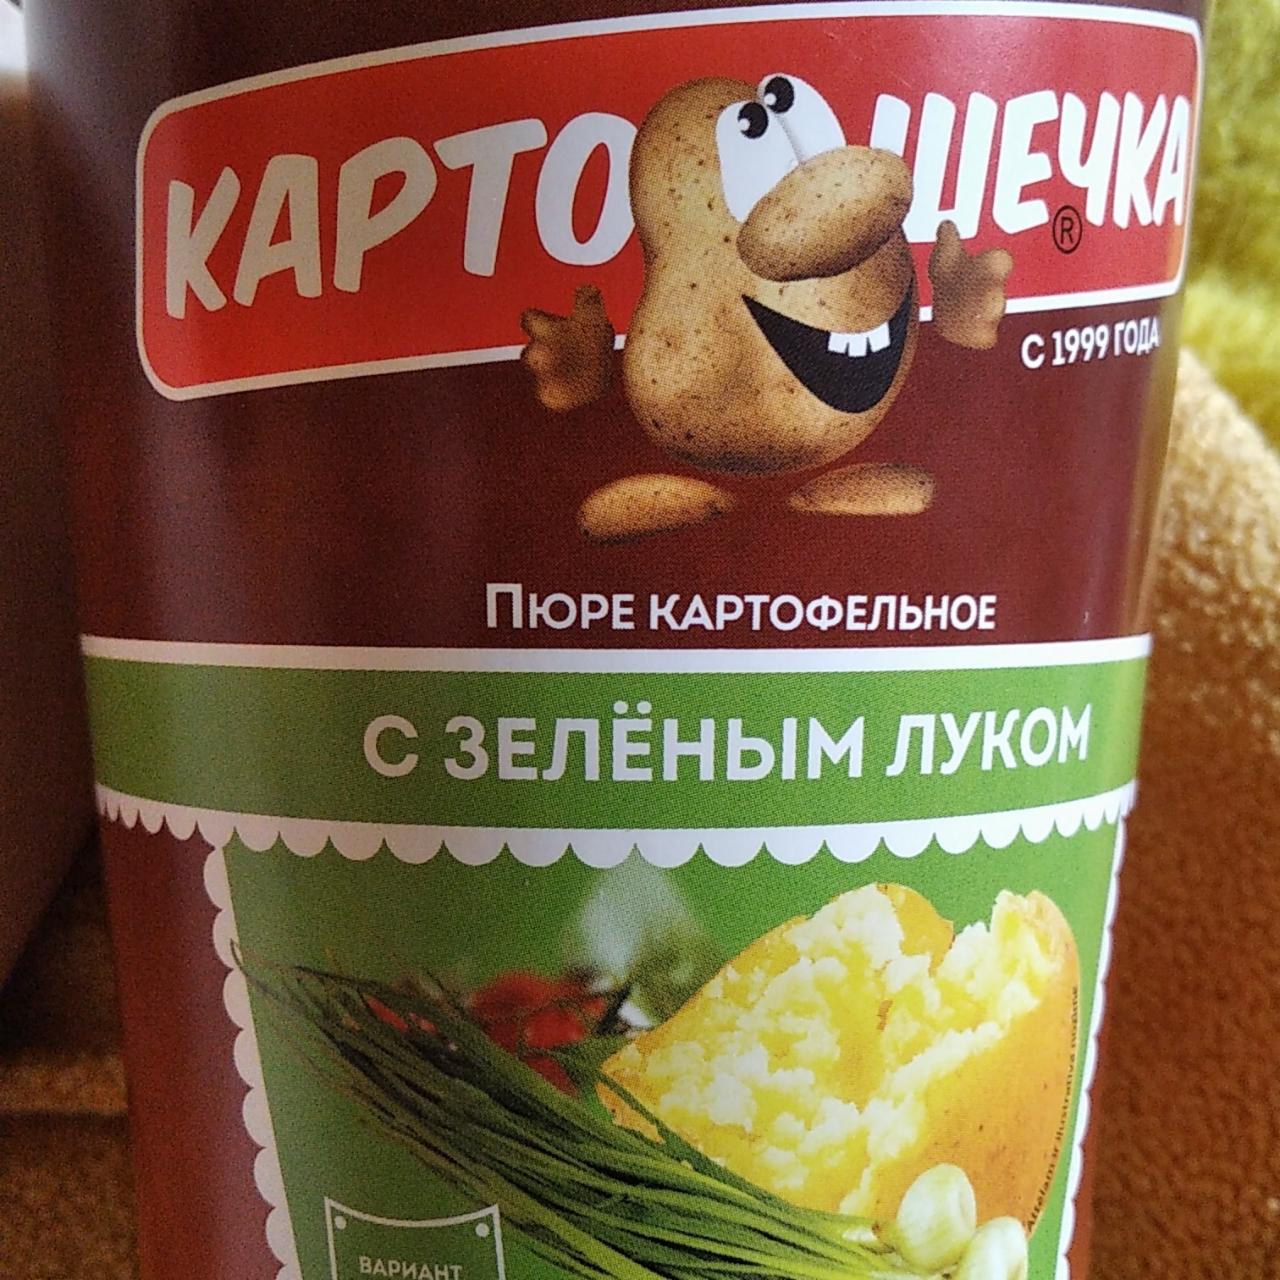 Фото - Картофельное пюре с зелёным луком Картошечка